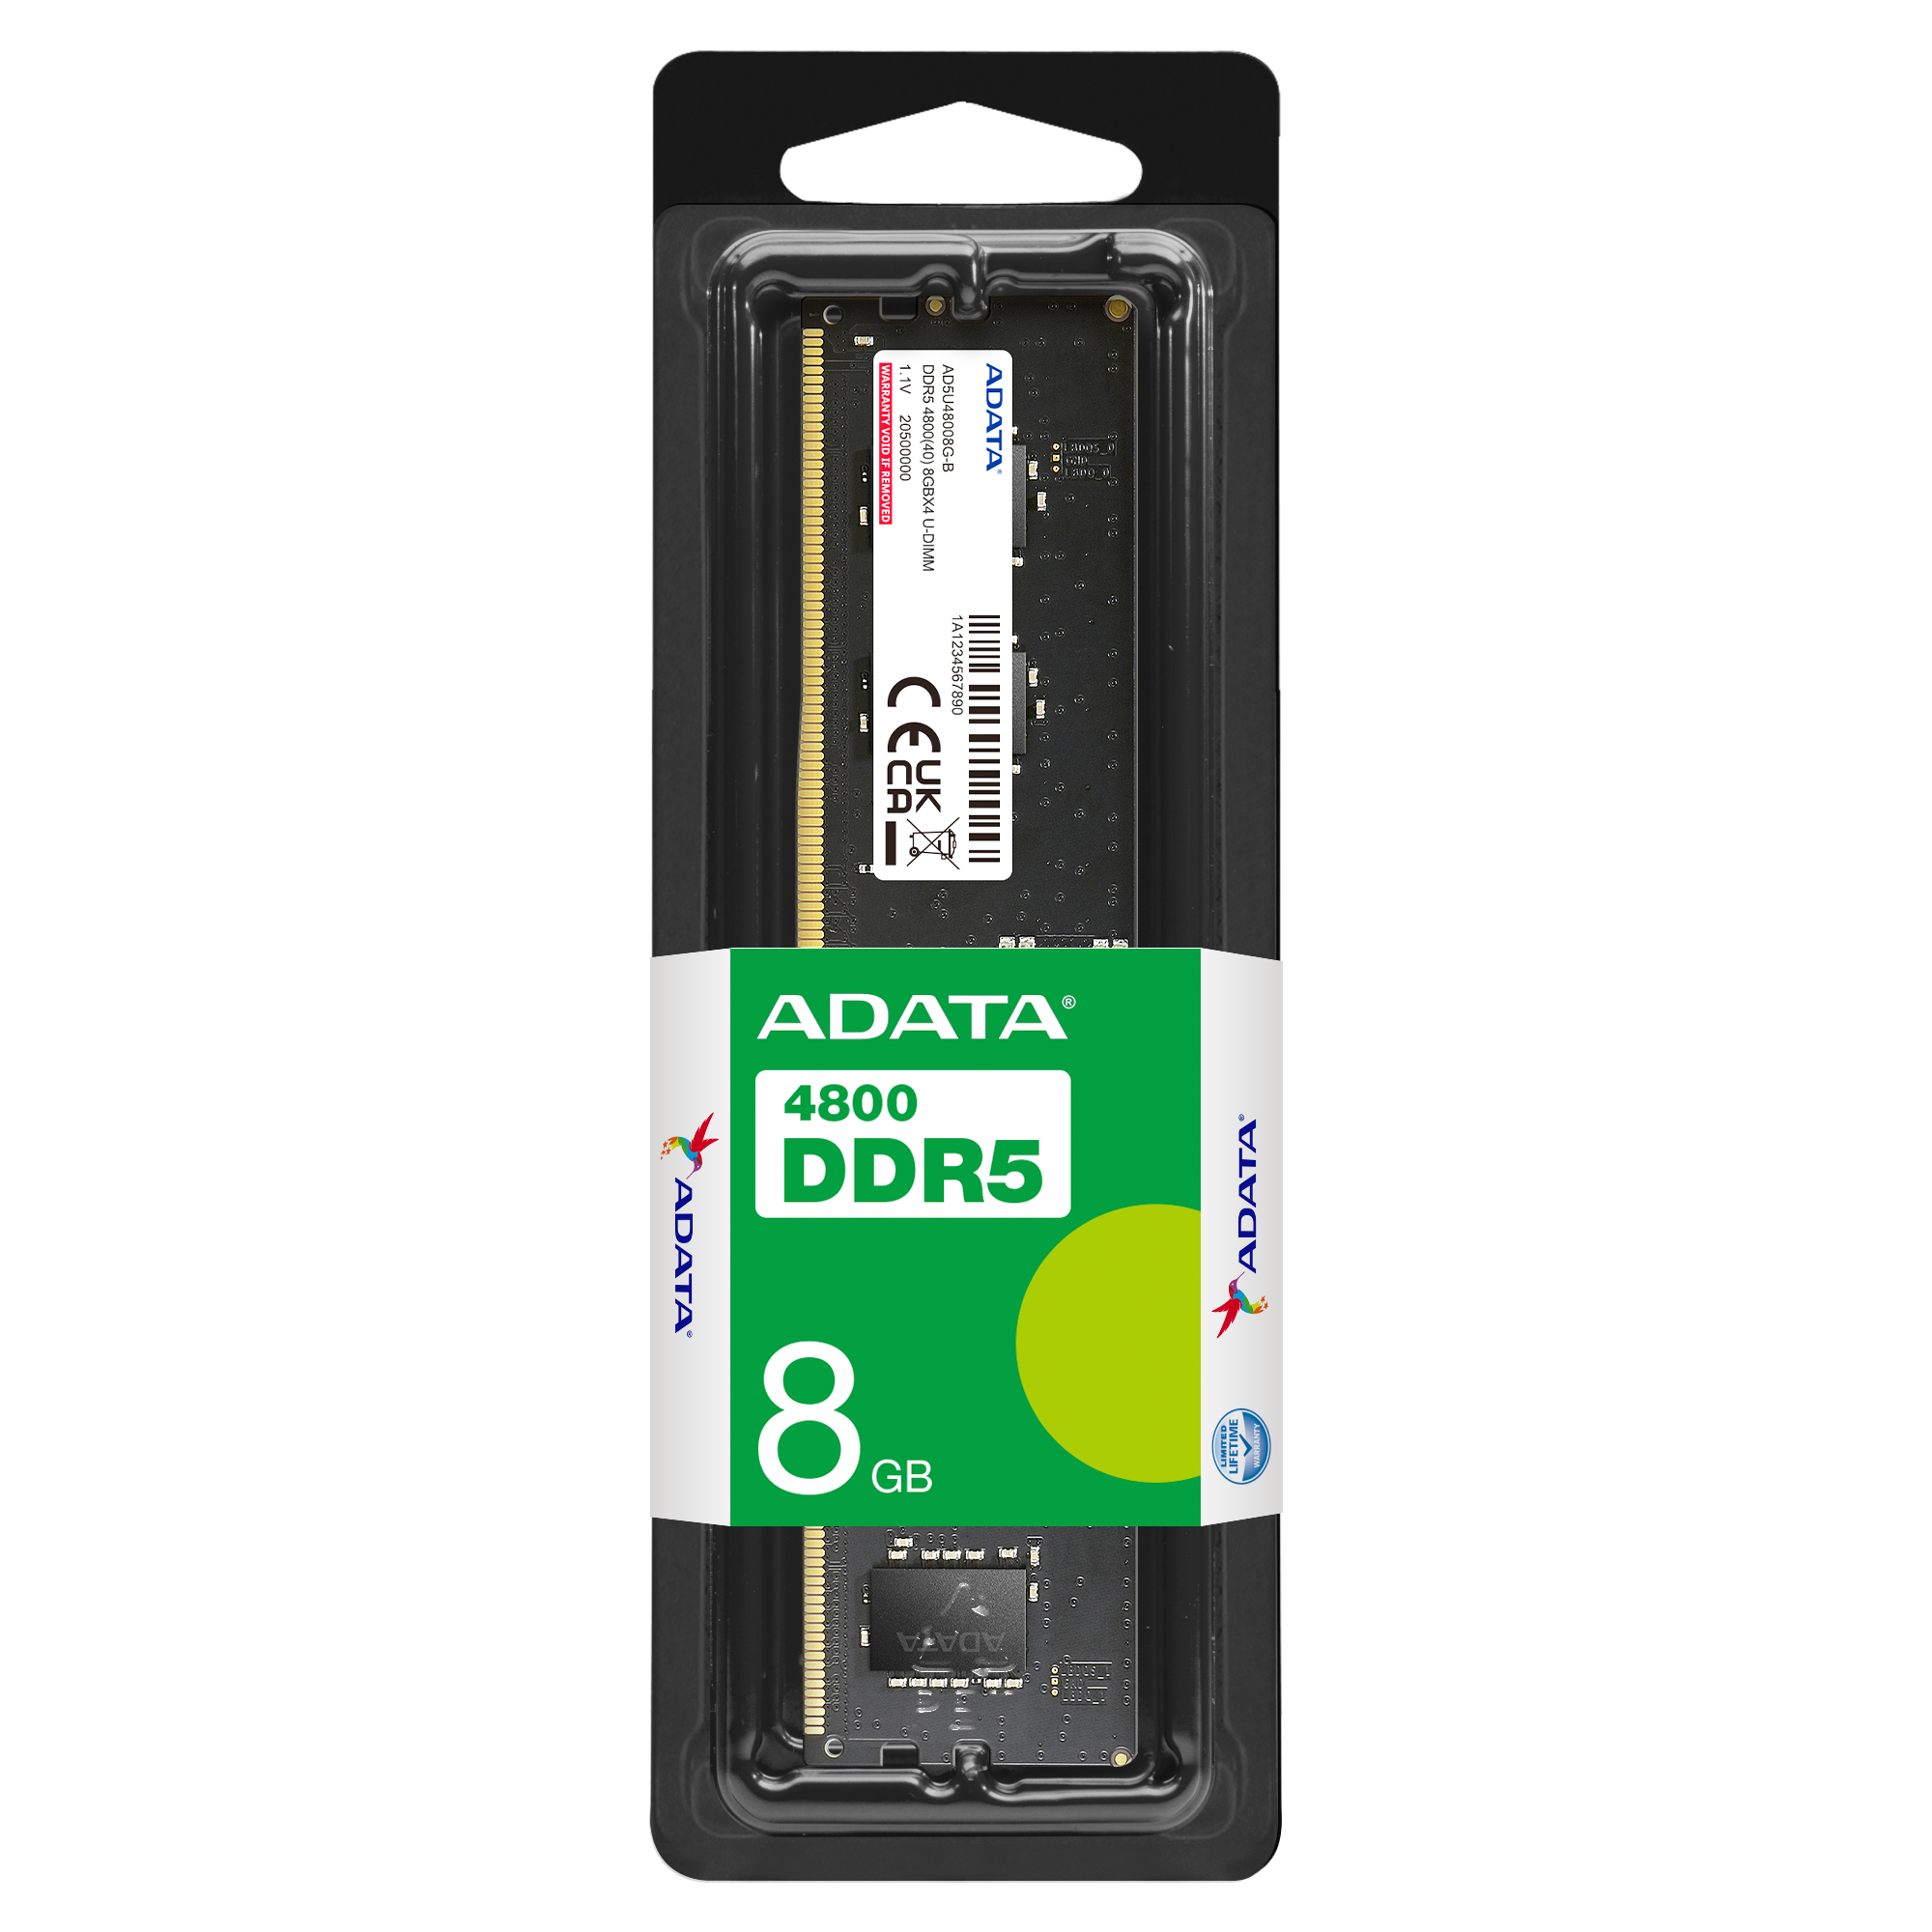 ADATA Premier DDR5 4800MHz 8GB